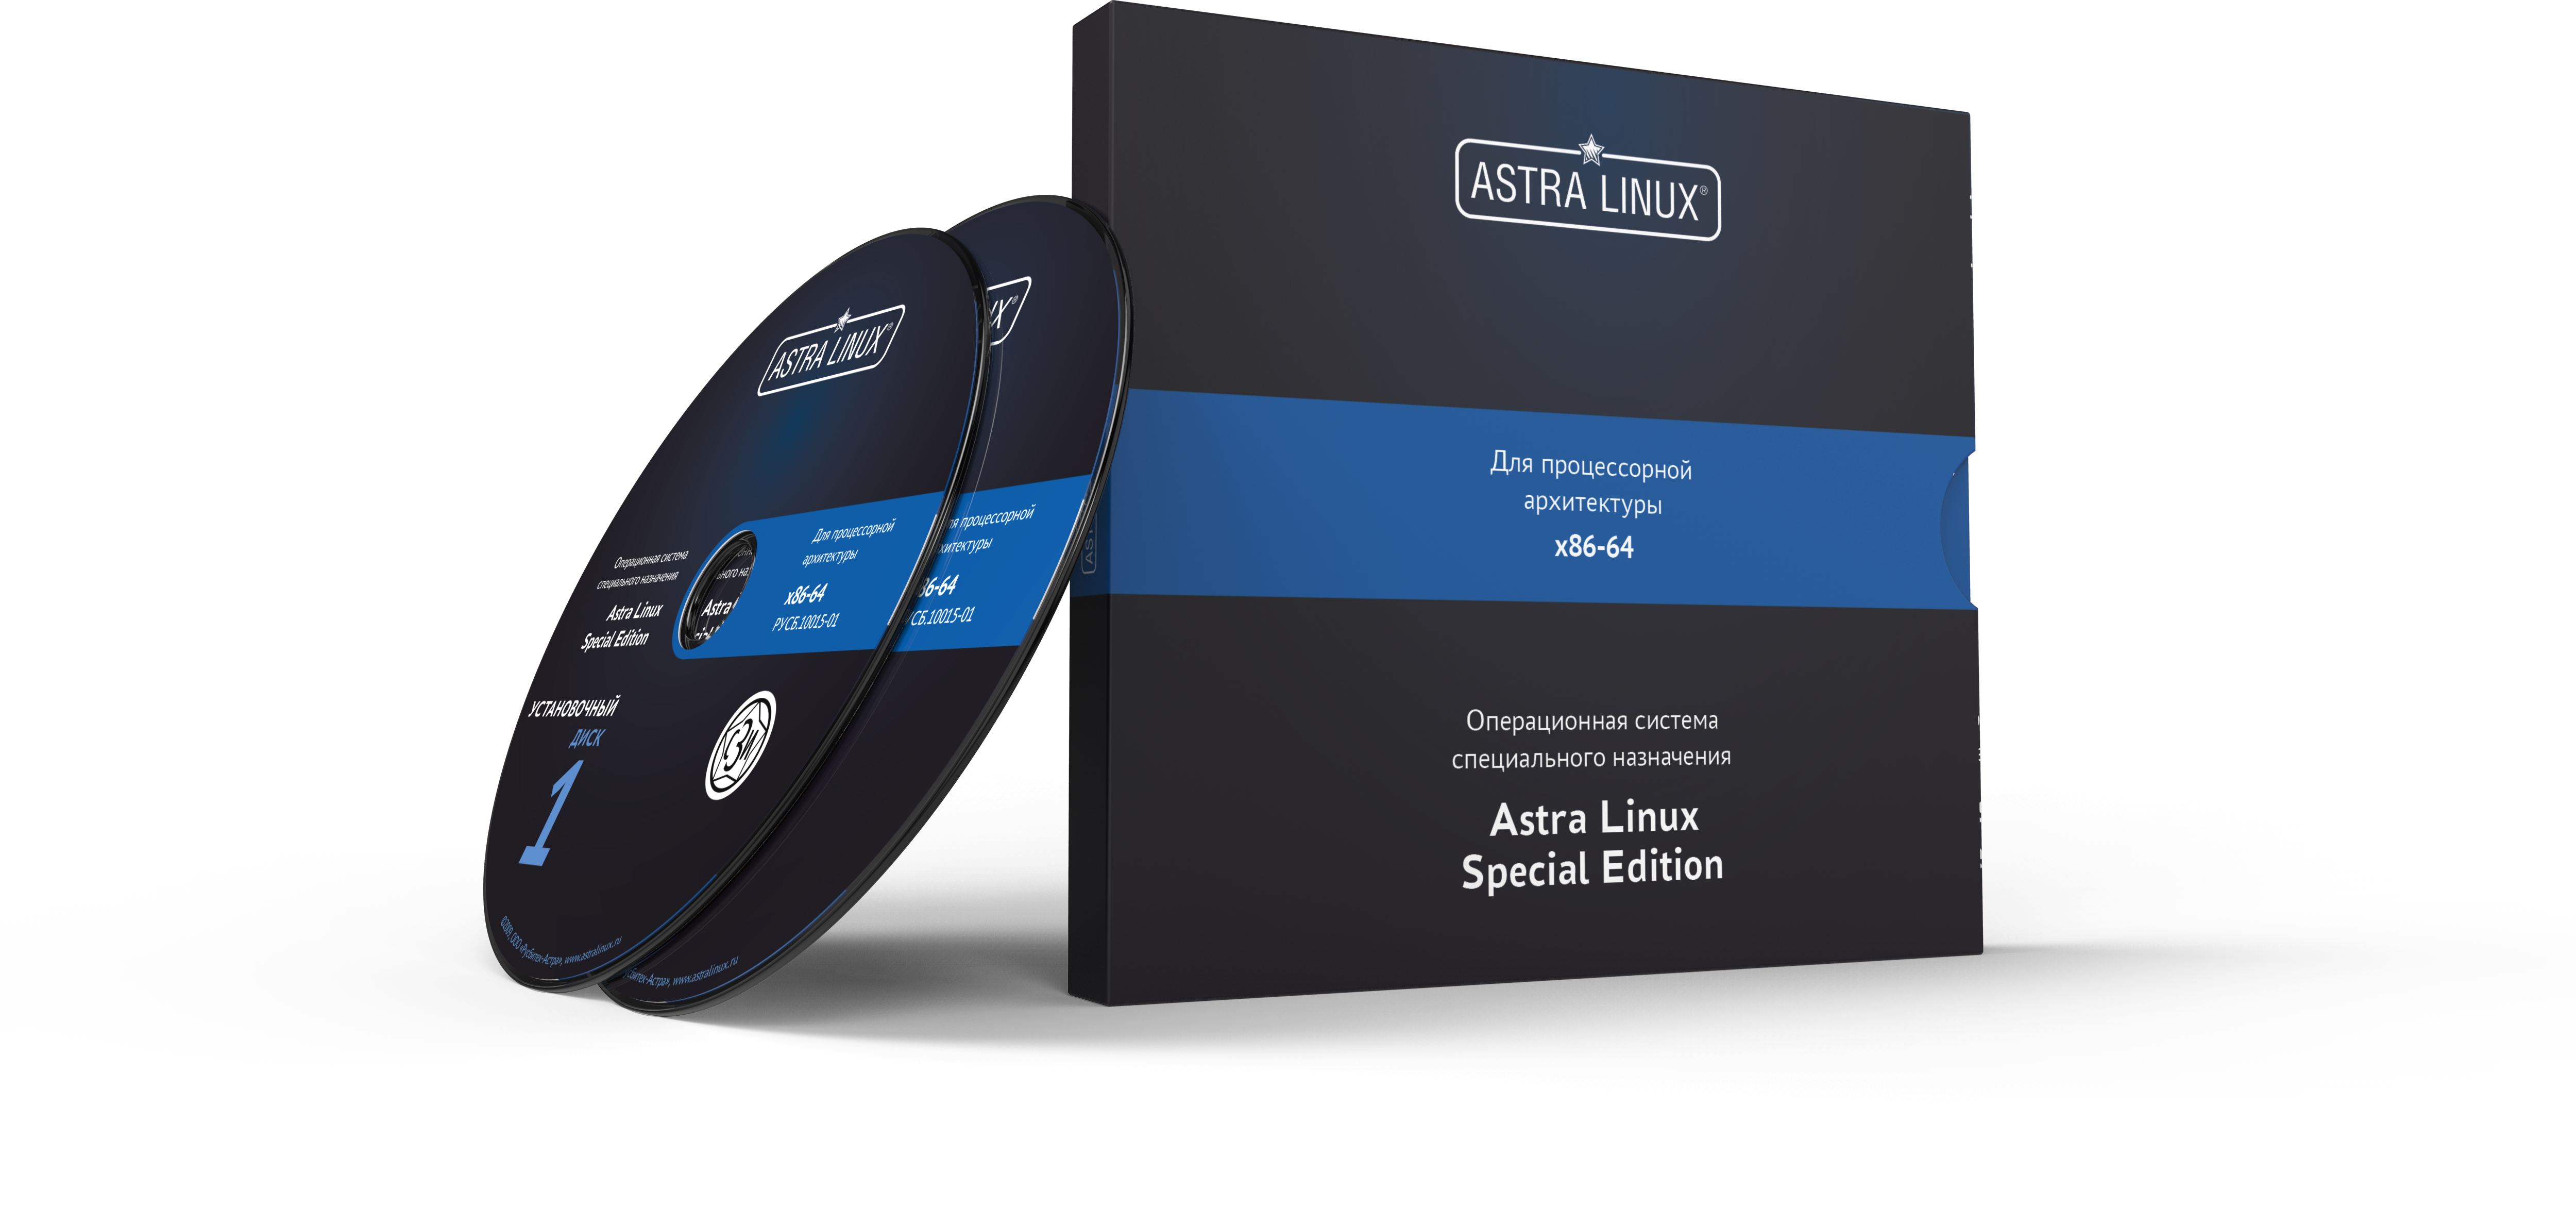 Astra Linux Special Edition 1.7 - Воронеж, для рабочей станции, электронный, "Усиленный", без огр. срока, ТП "Привилегированная" на 12 мес.